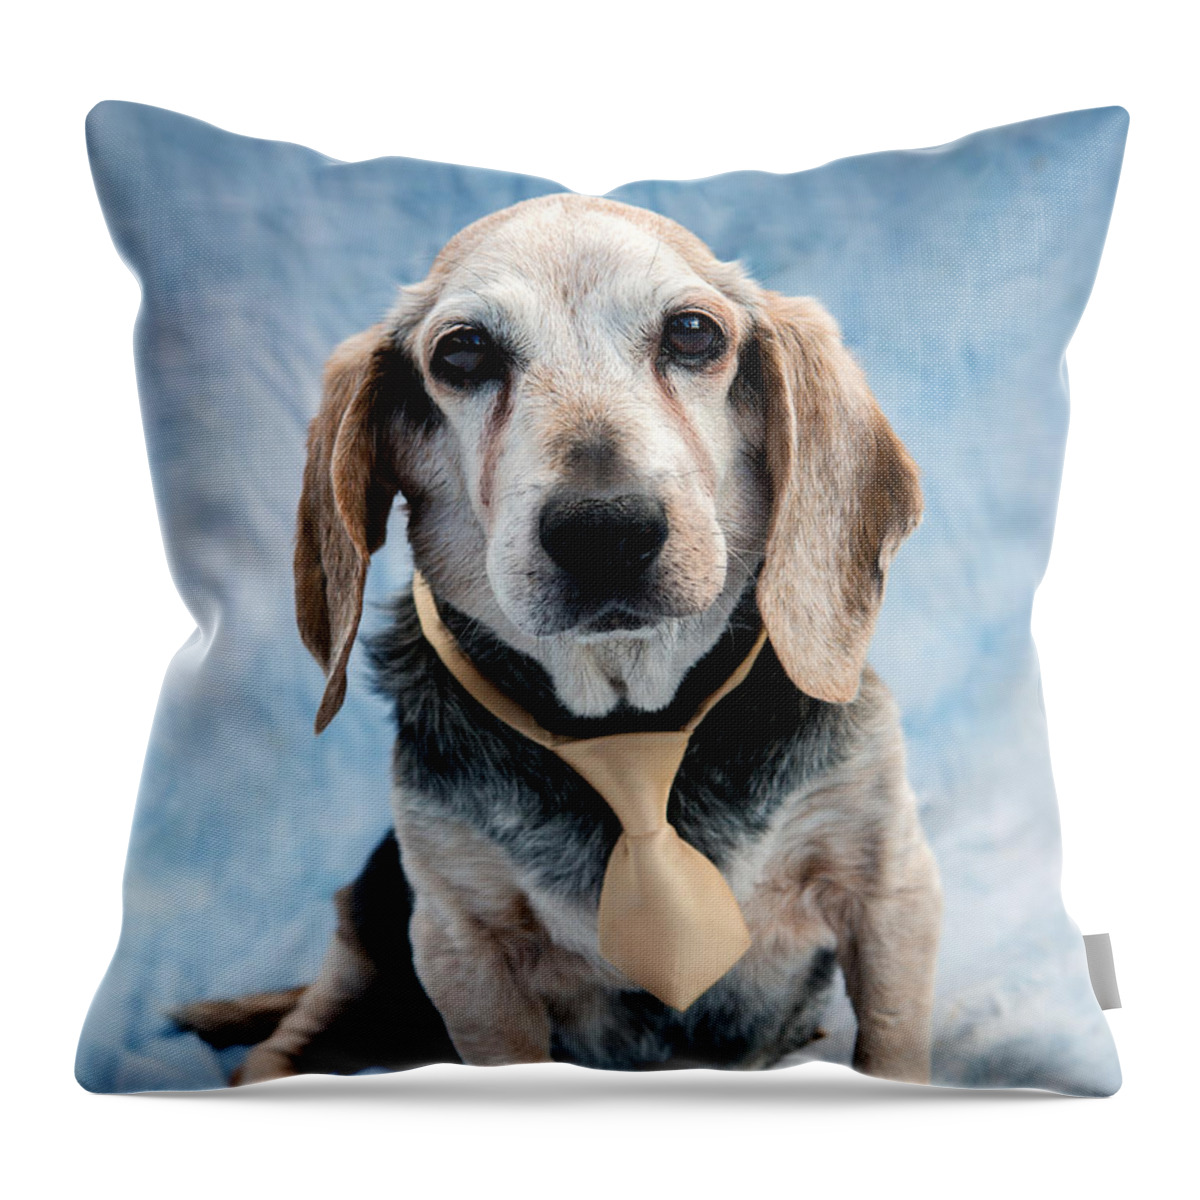 Beagle Throw Pillow featuring the photograph Kippy Beagle Senior by Iris Richardson